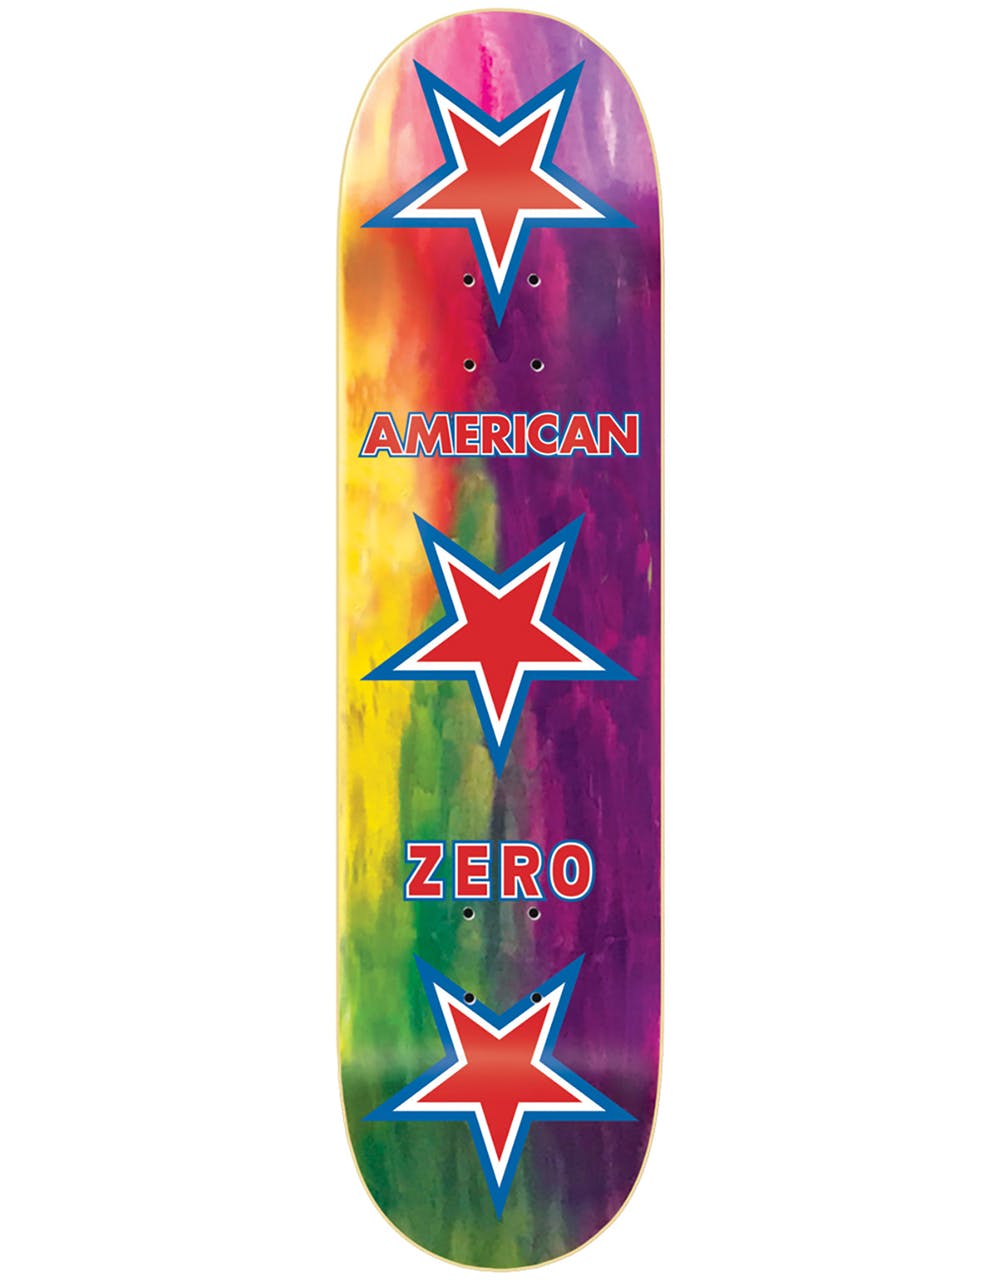 Zero American Zero Skateboard Deck - 8.25"